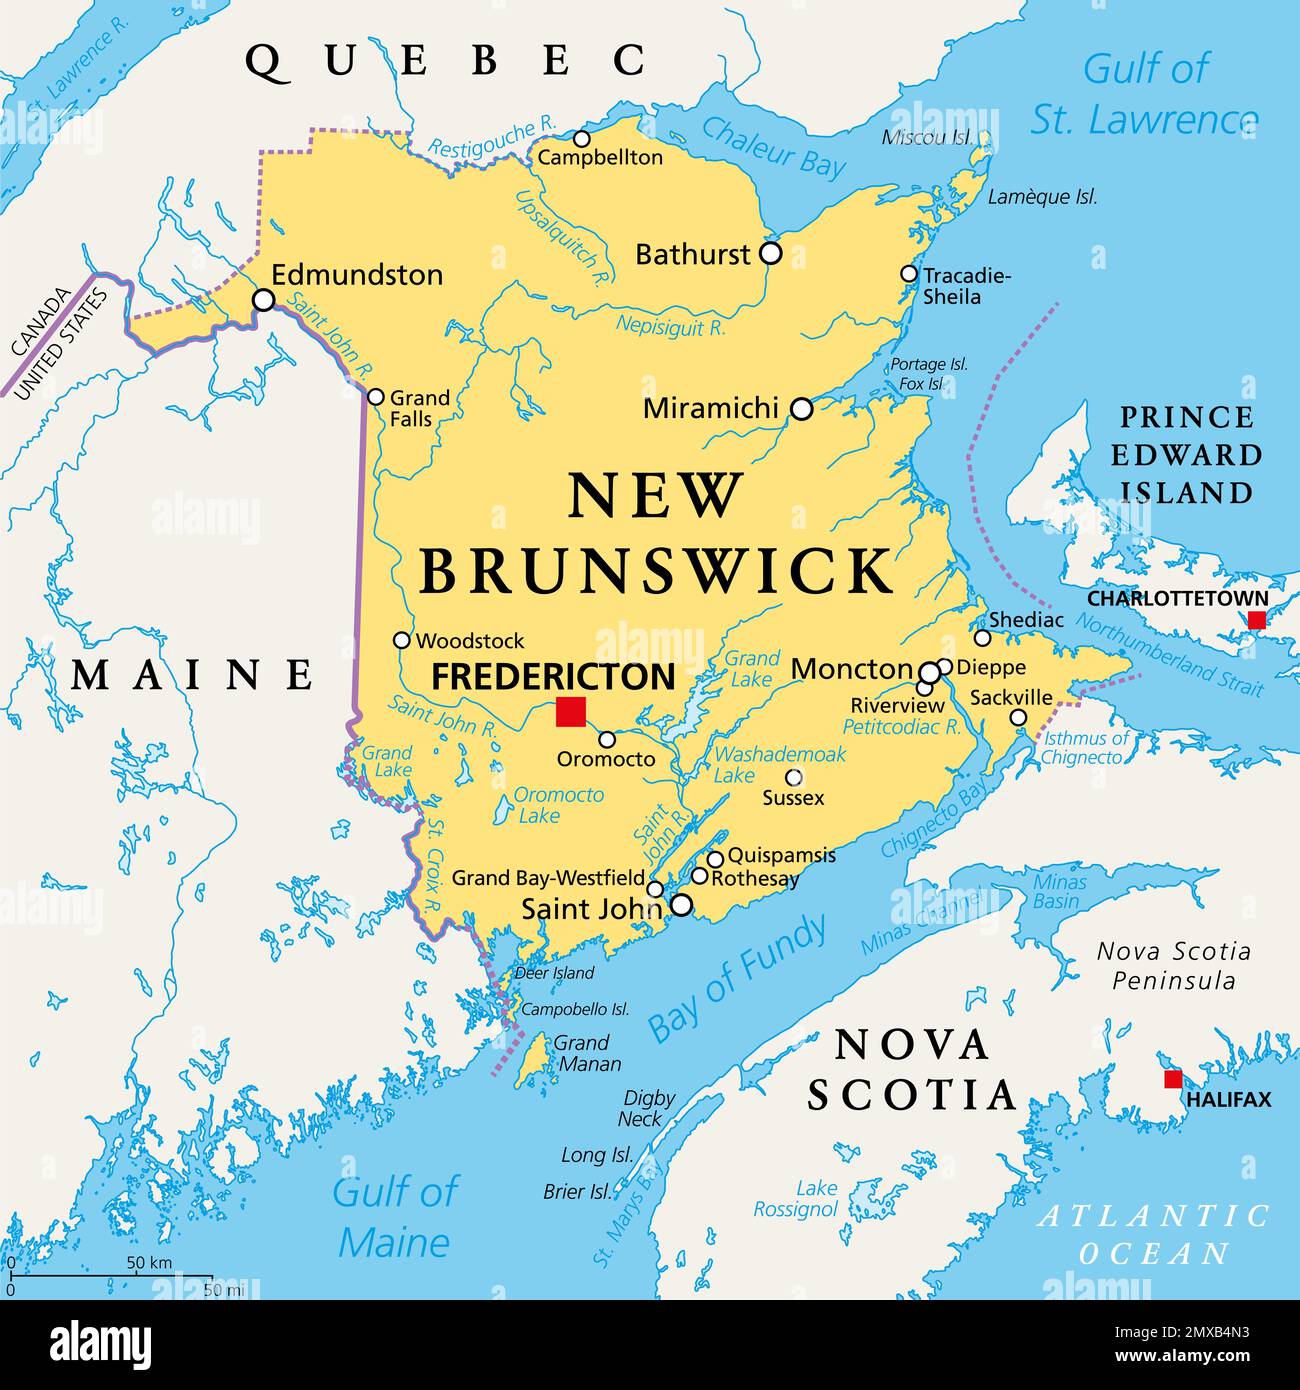 New Brunswick, provincia marittima e atlantica del Canada, mappa politica. Confina con Quebec, Nuova Scozia, Golfo di St Lawrence, Baia di Fundy e Maine. Foto Stock